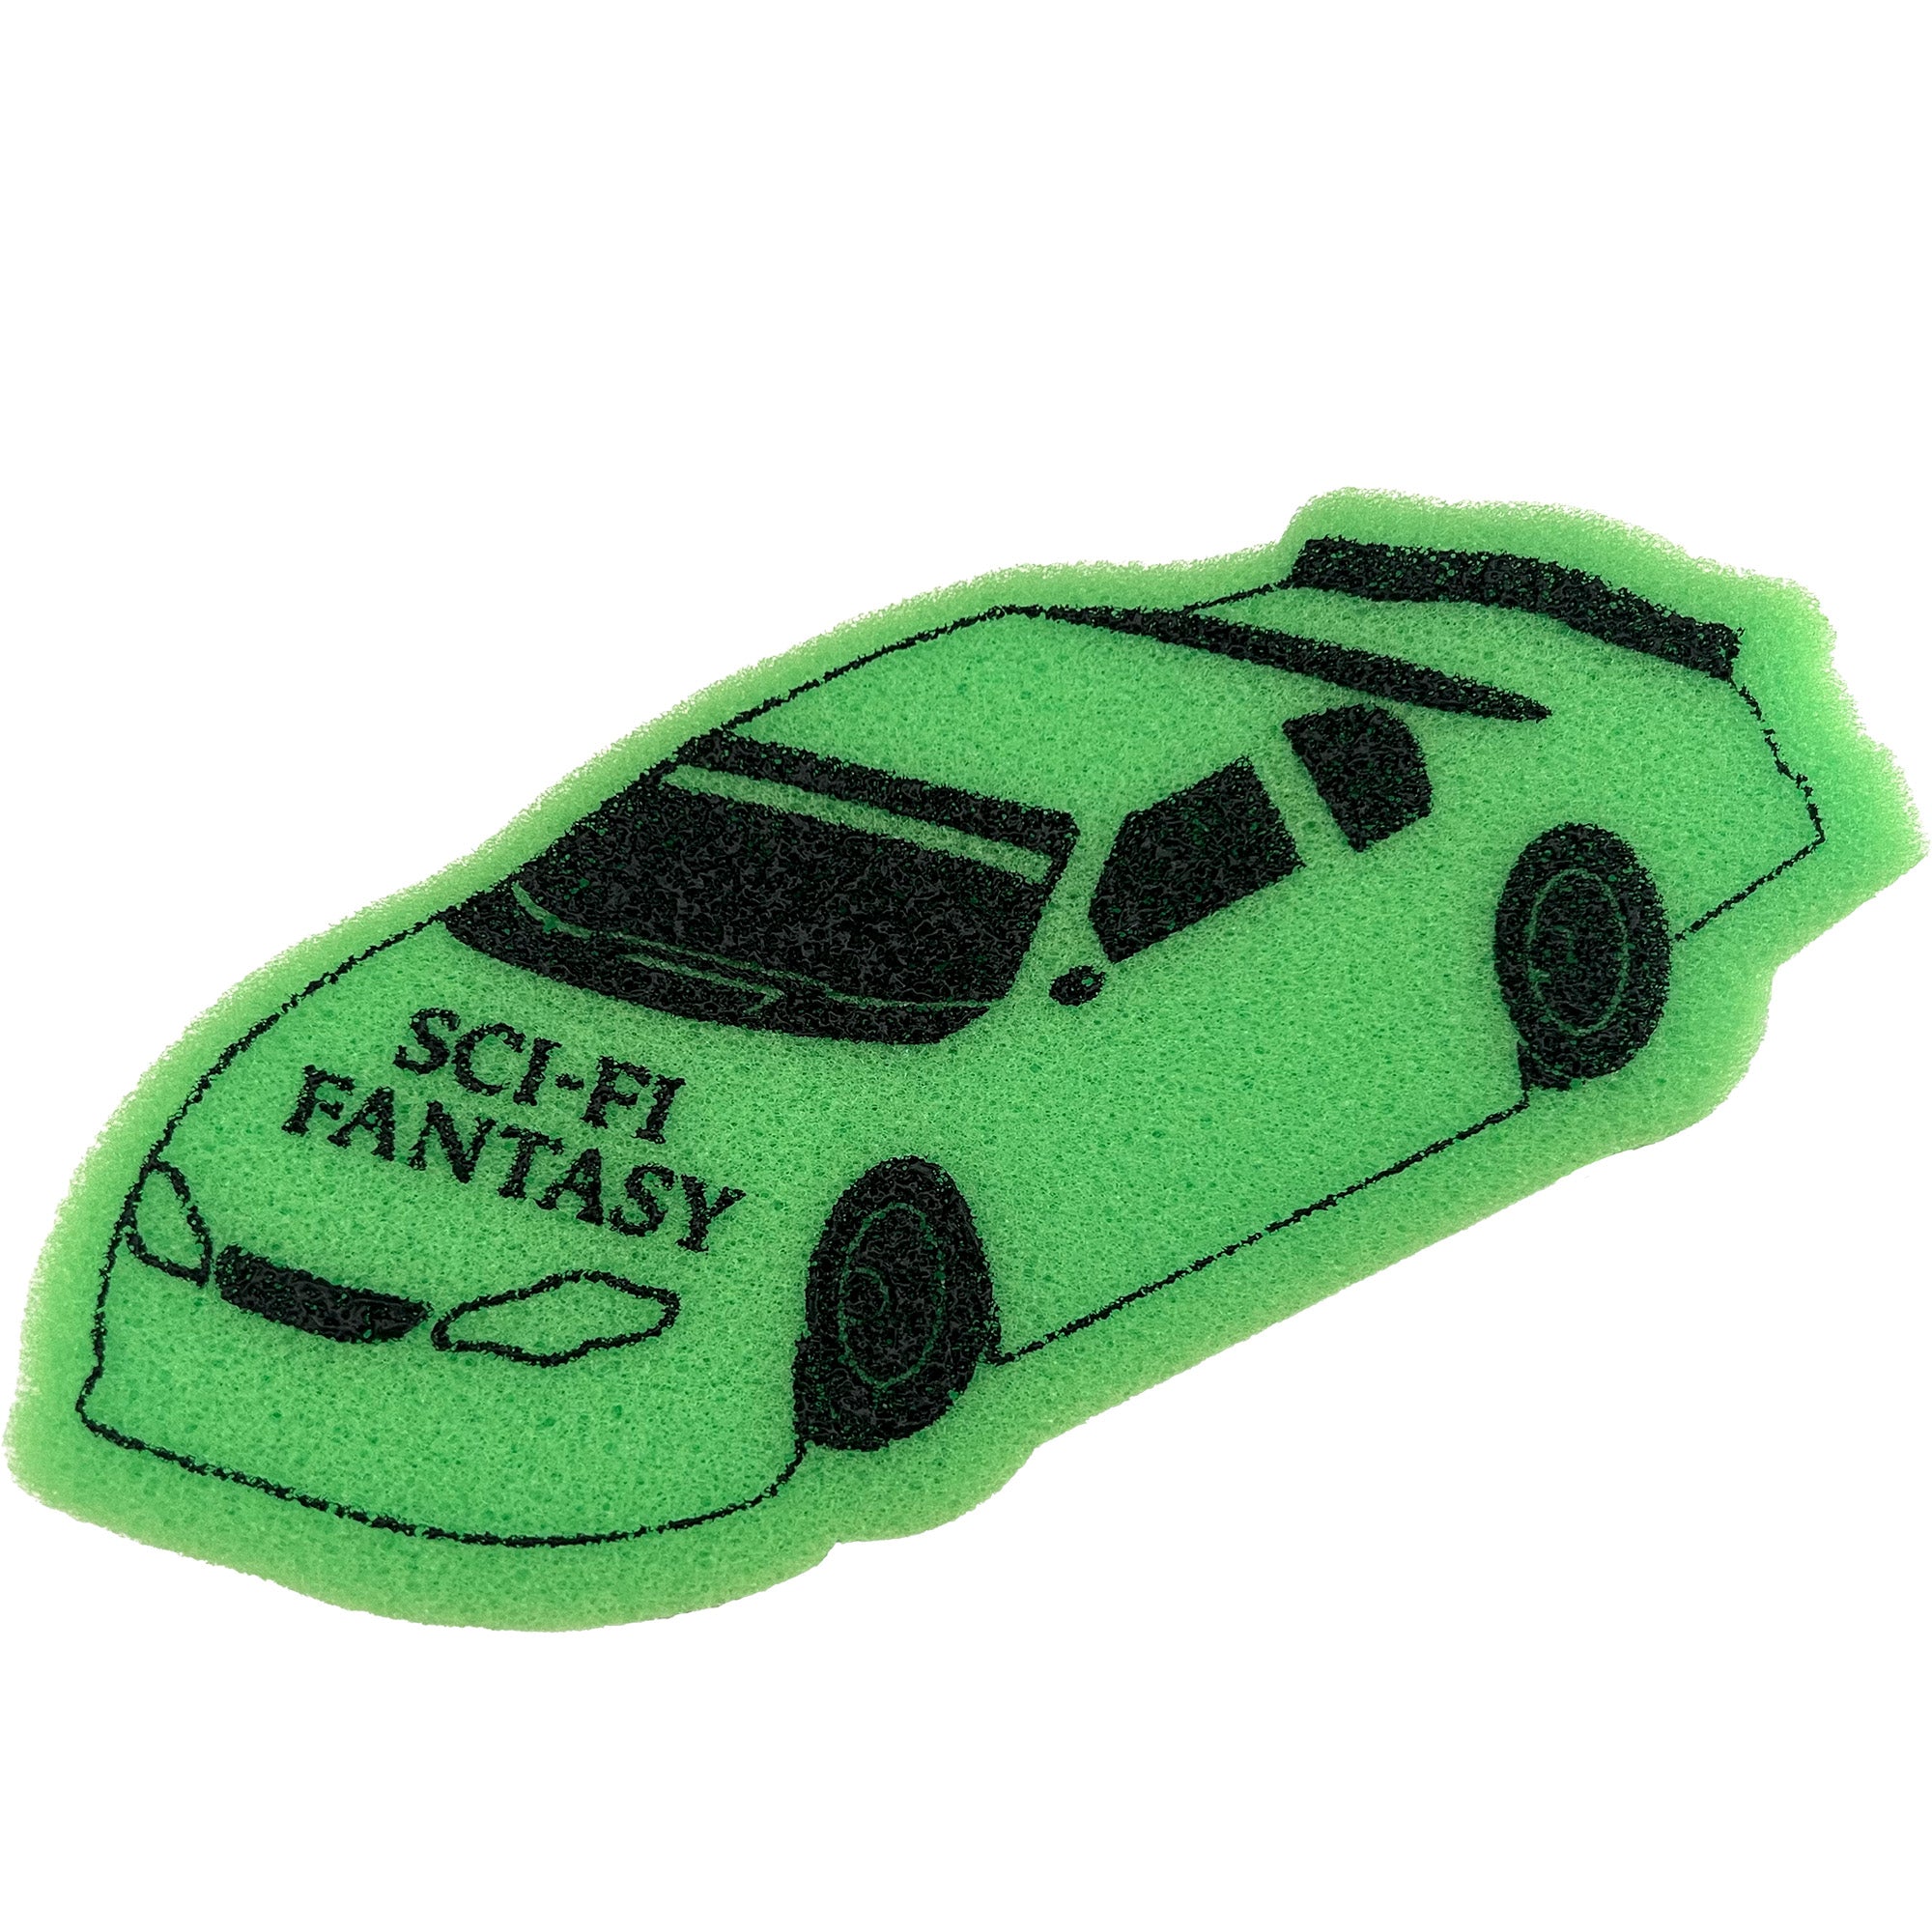 Sci-i Fantasy Car Sponge Green